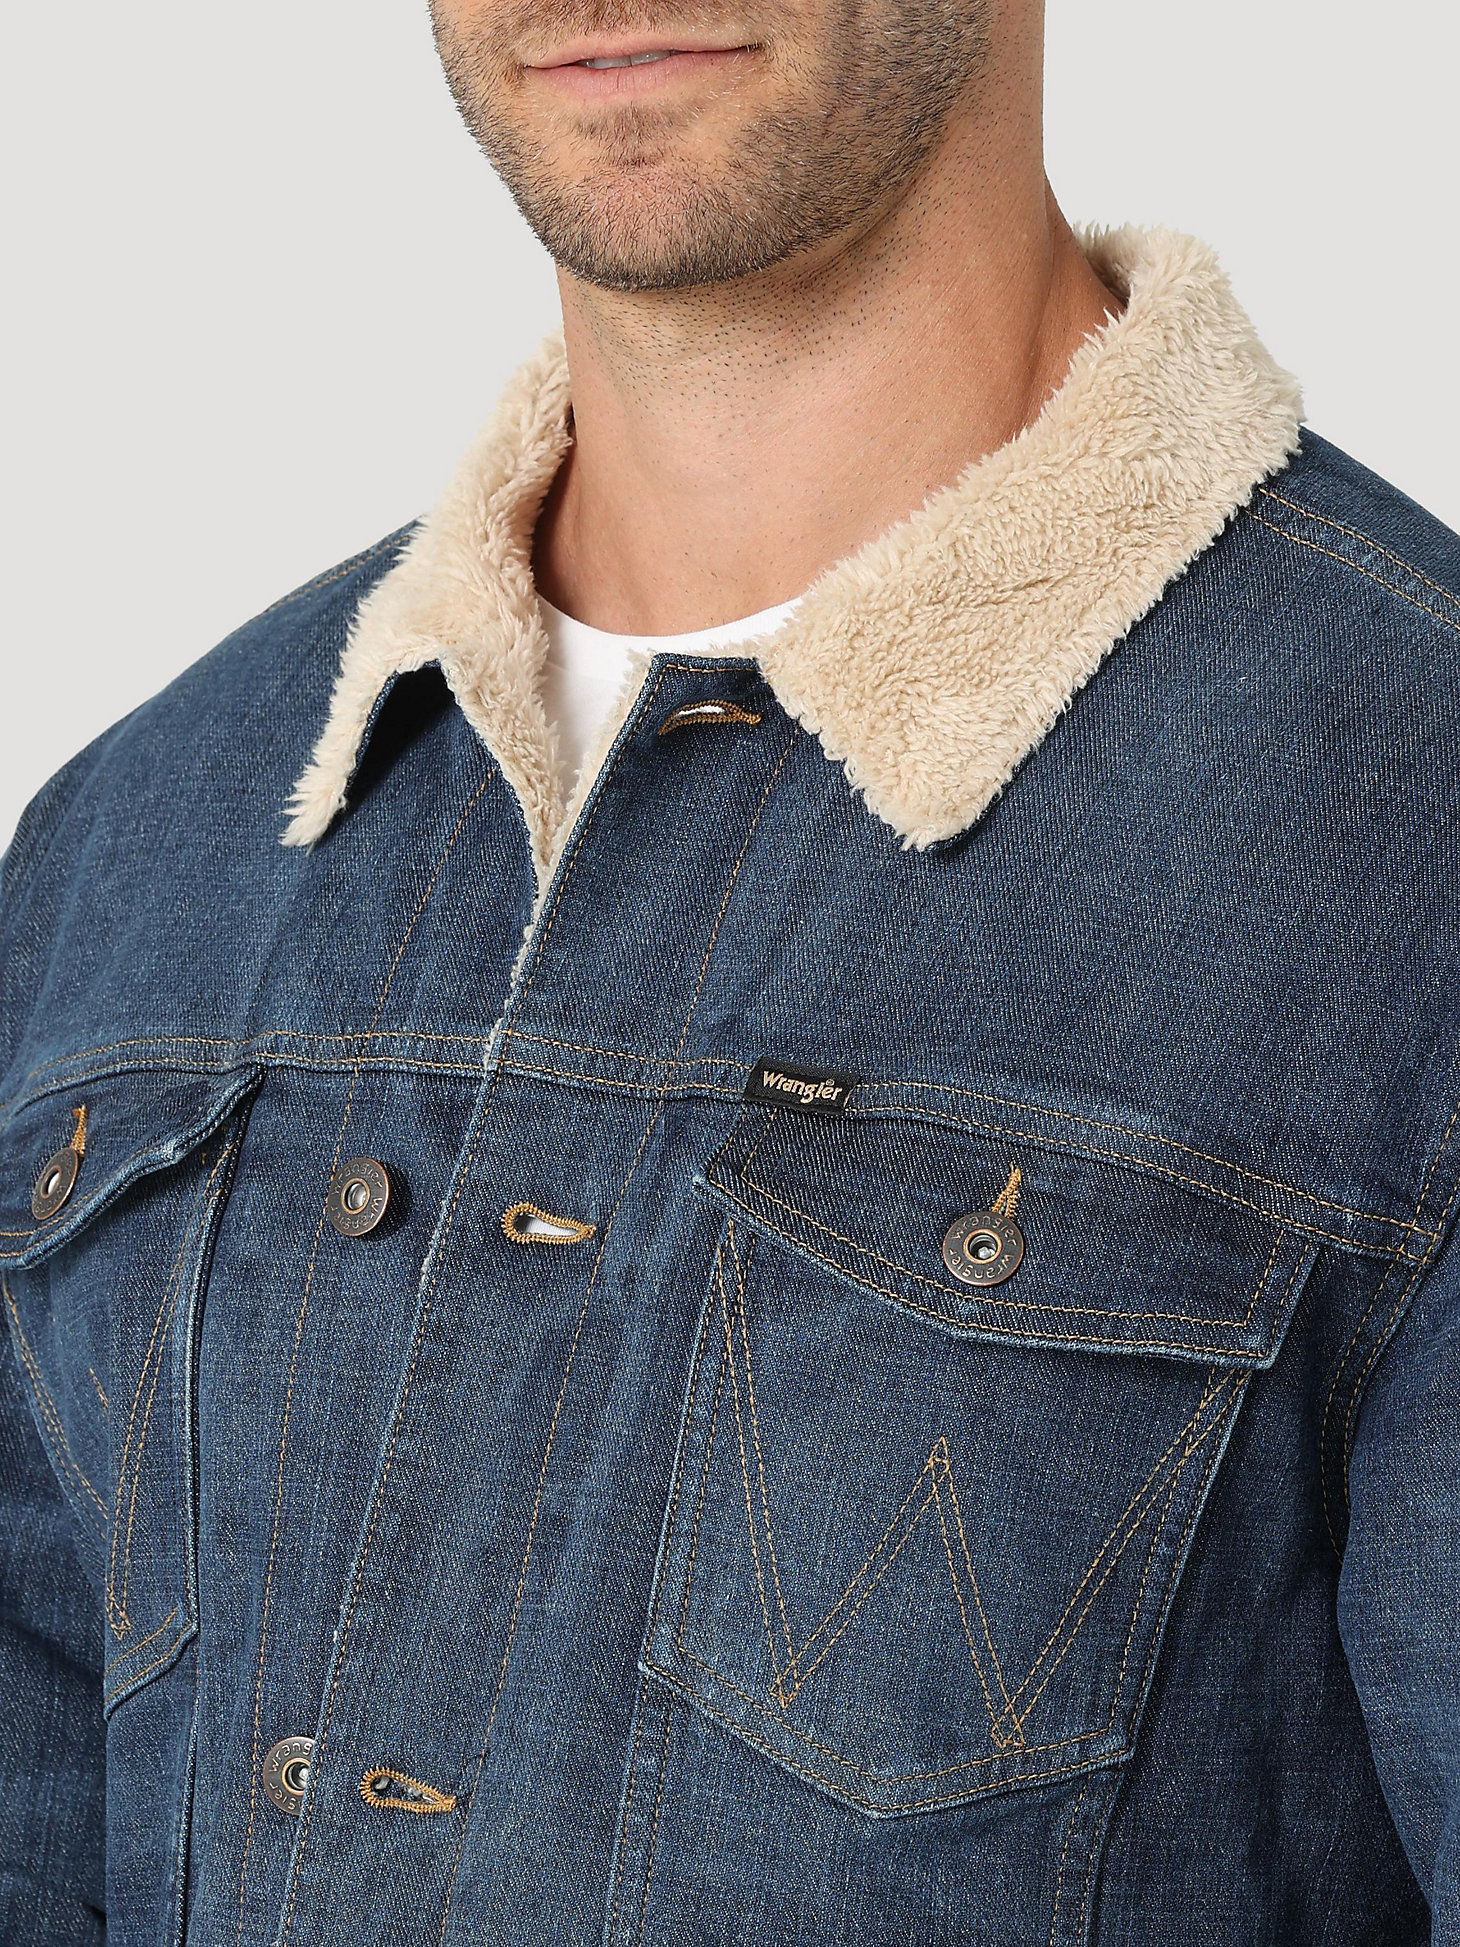 Men's Wrangler® Sherpa Lined Denim Jacket in Dark Indigo alternative view 2